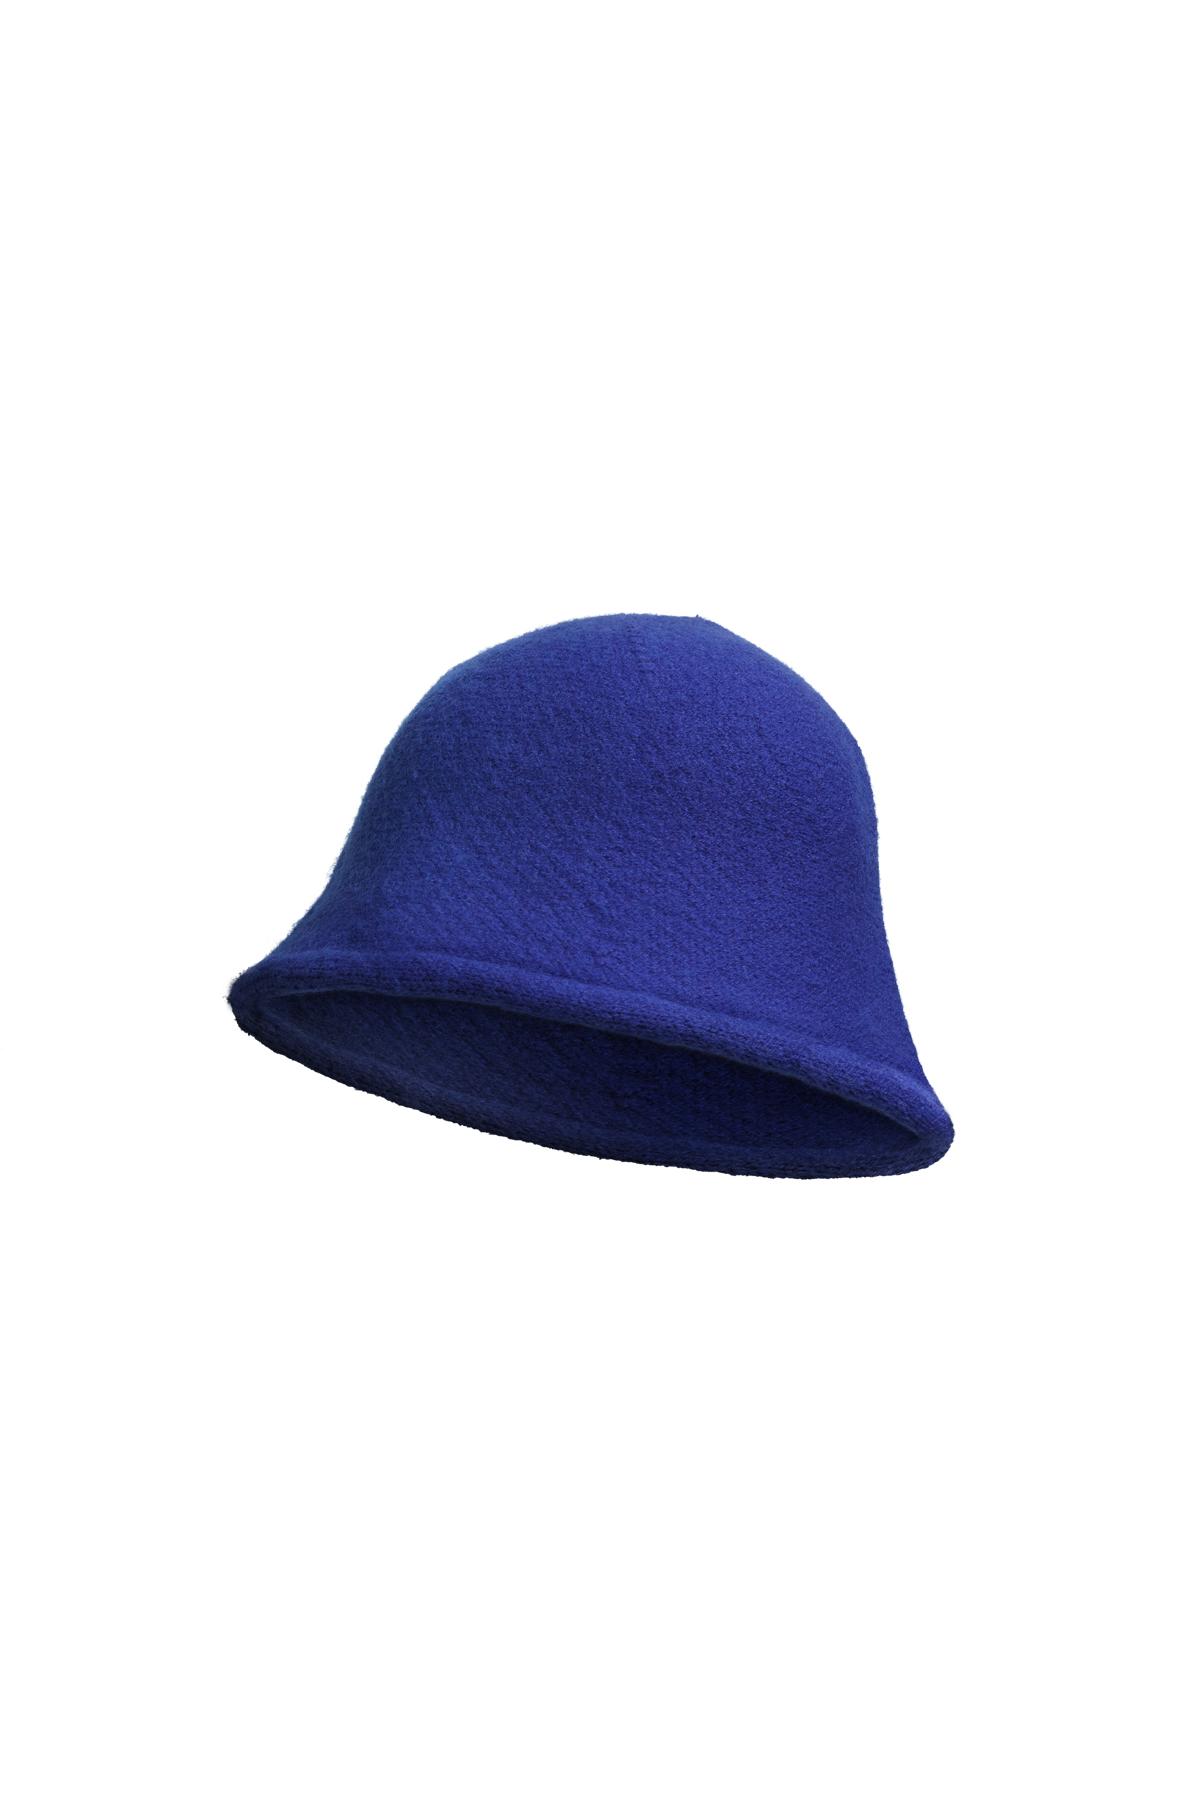 Cappello da pescatore tinta unita Blue Acrylic h5 